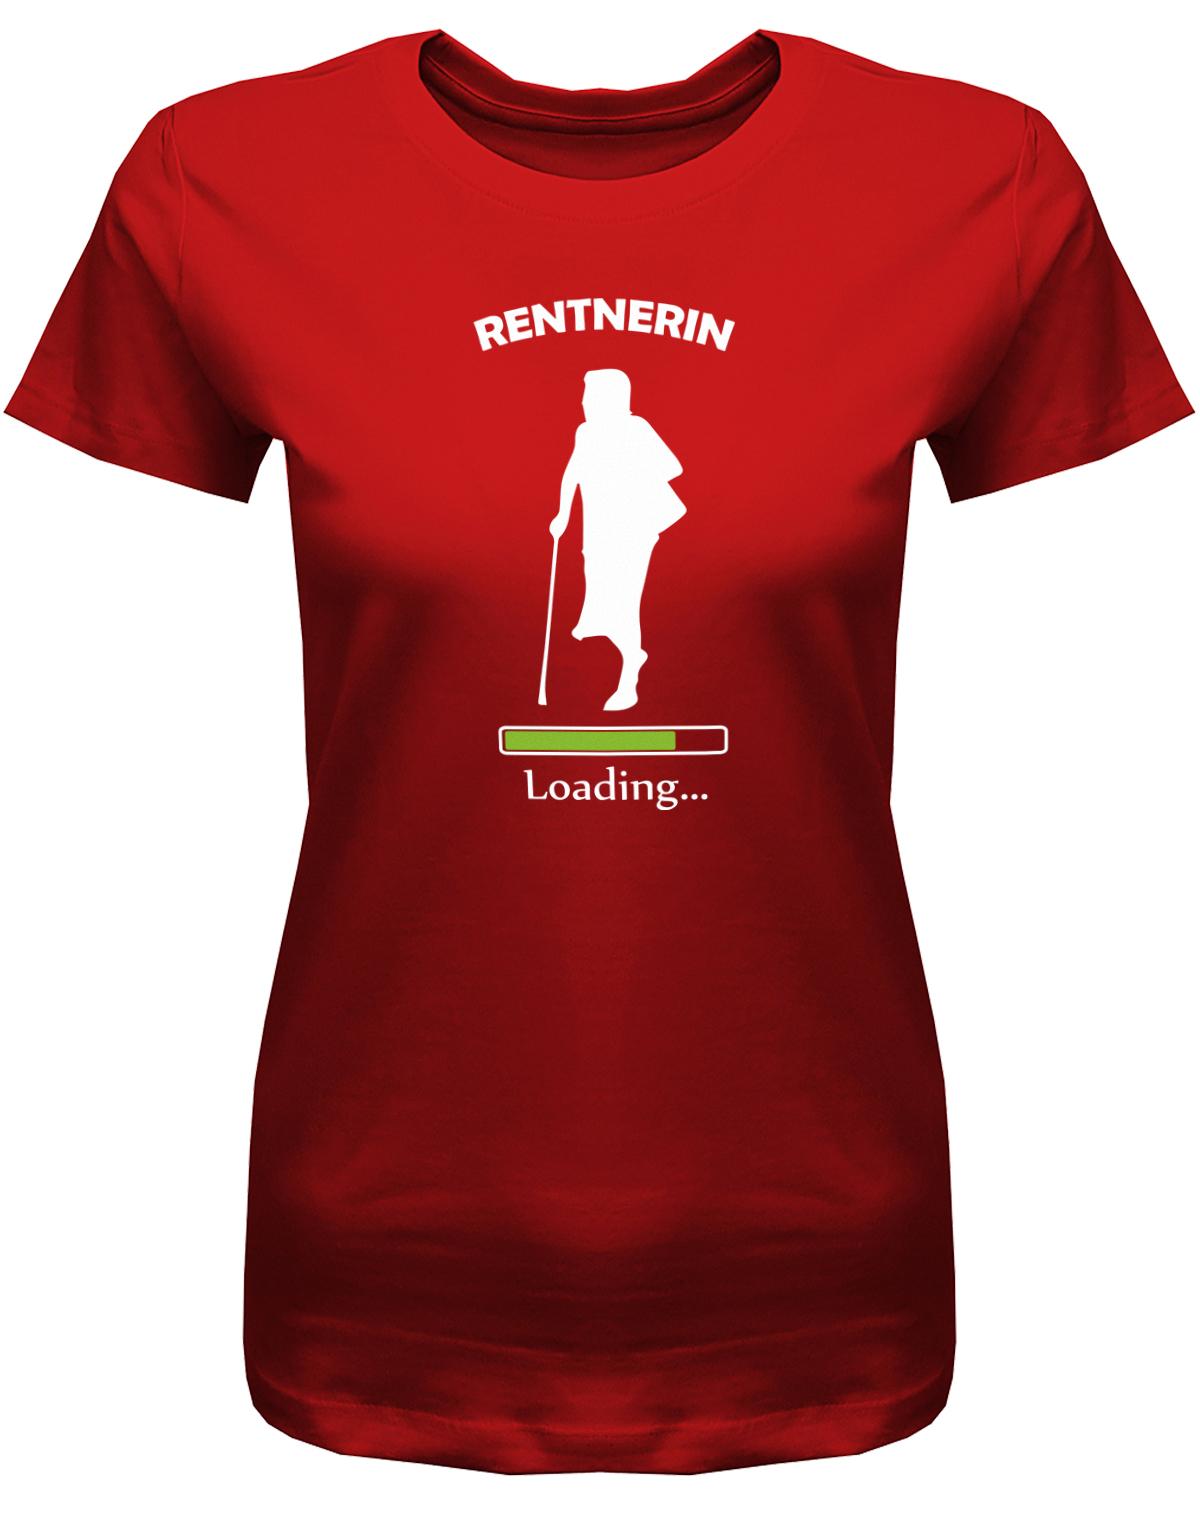 Rentnerin-Loading-Damen-Shirt-Rot